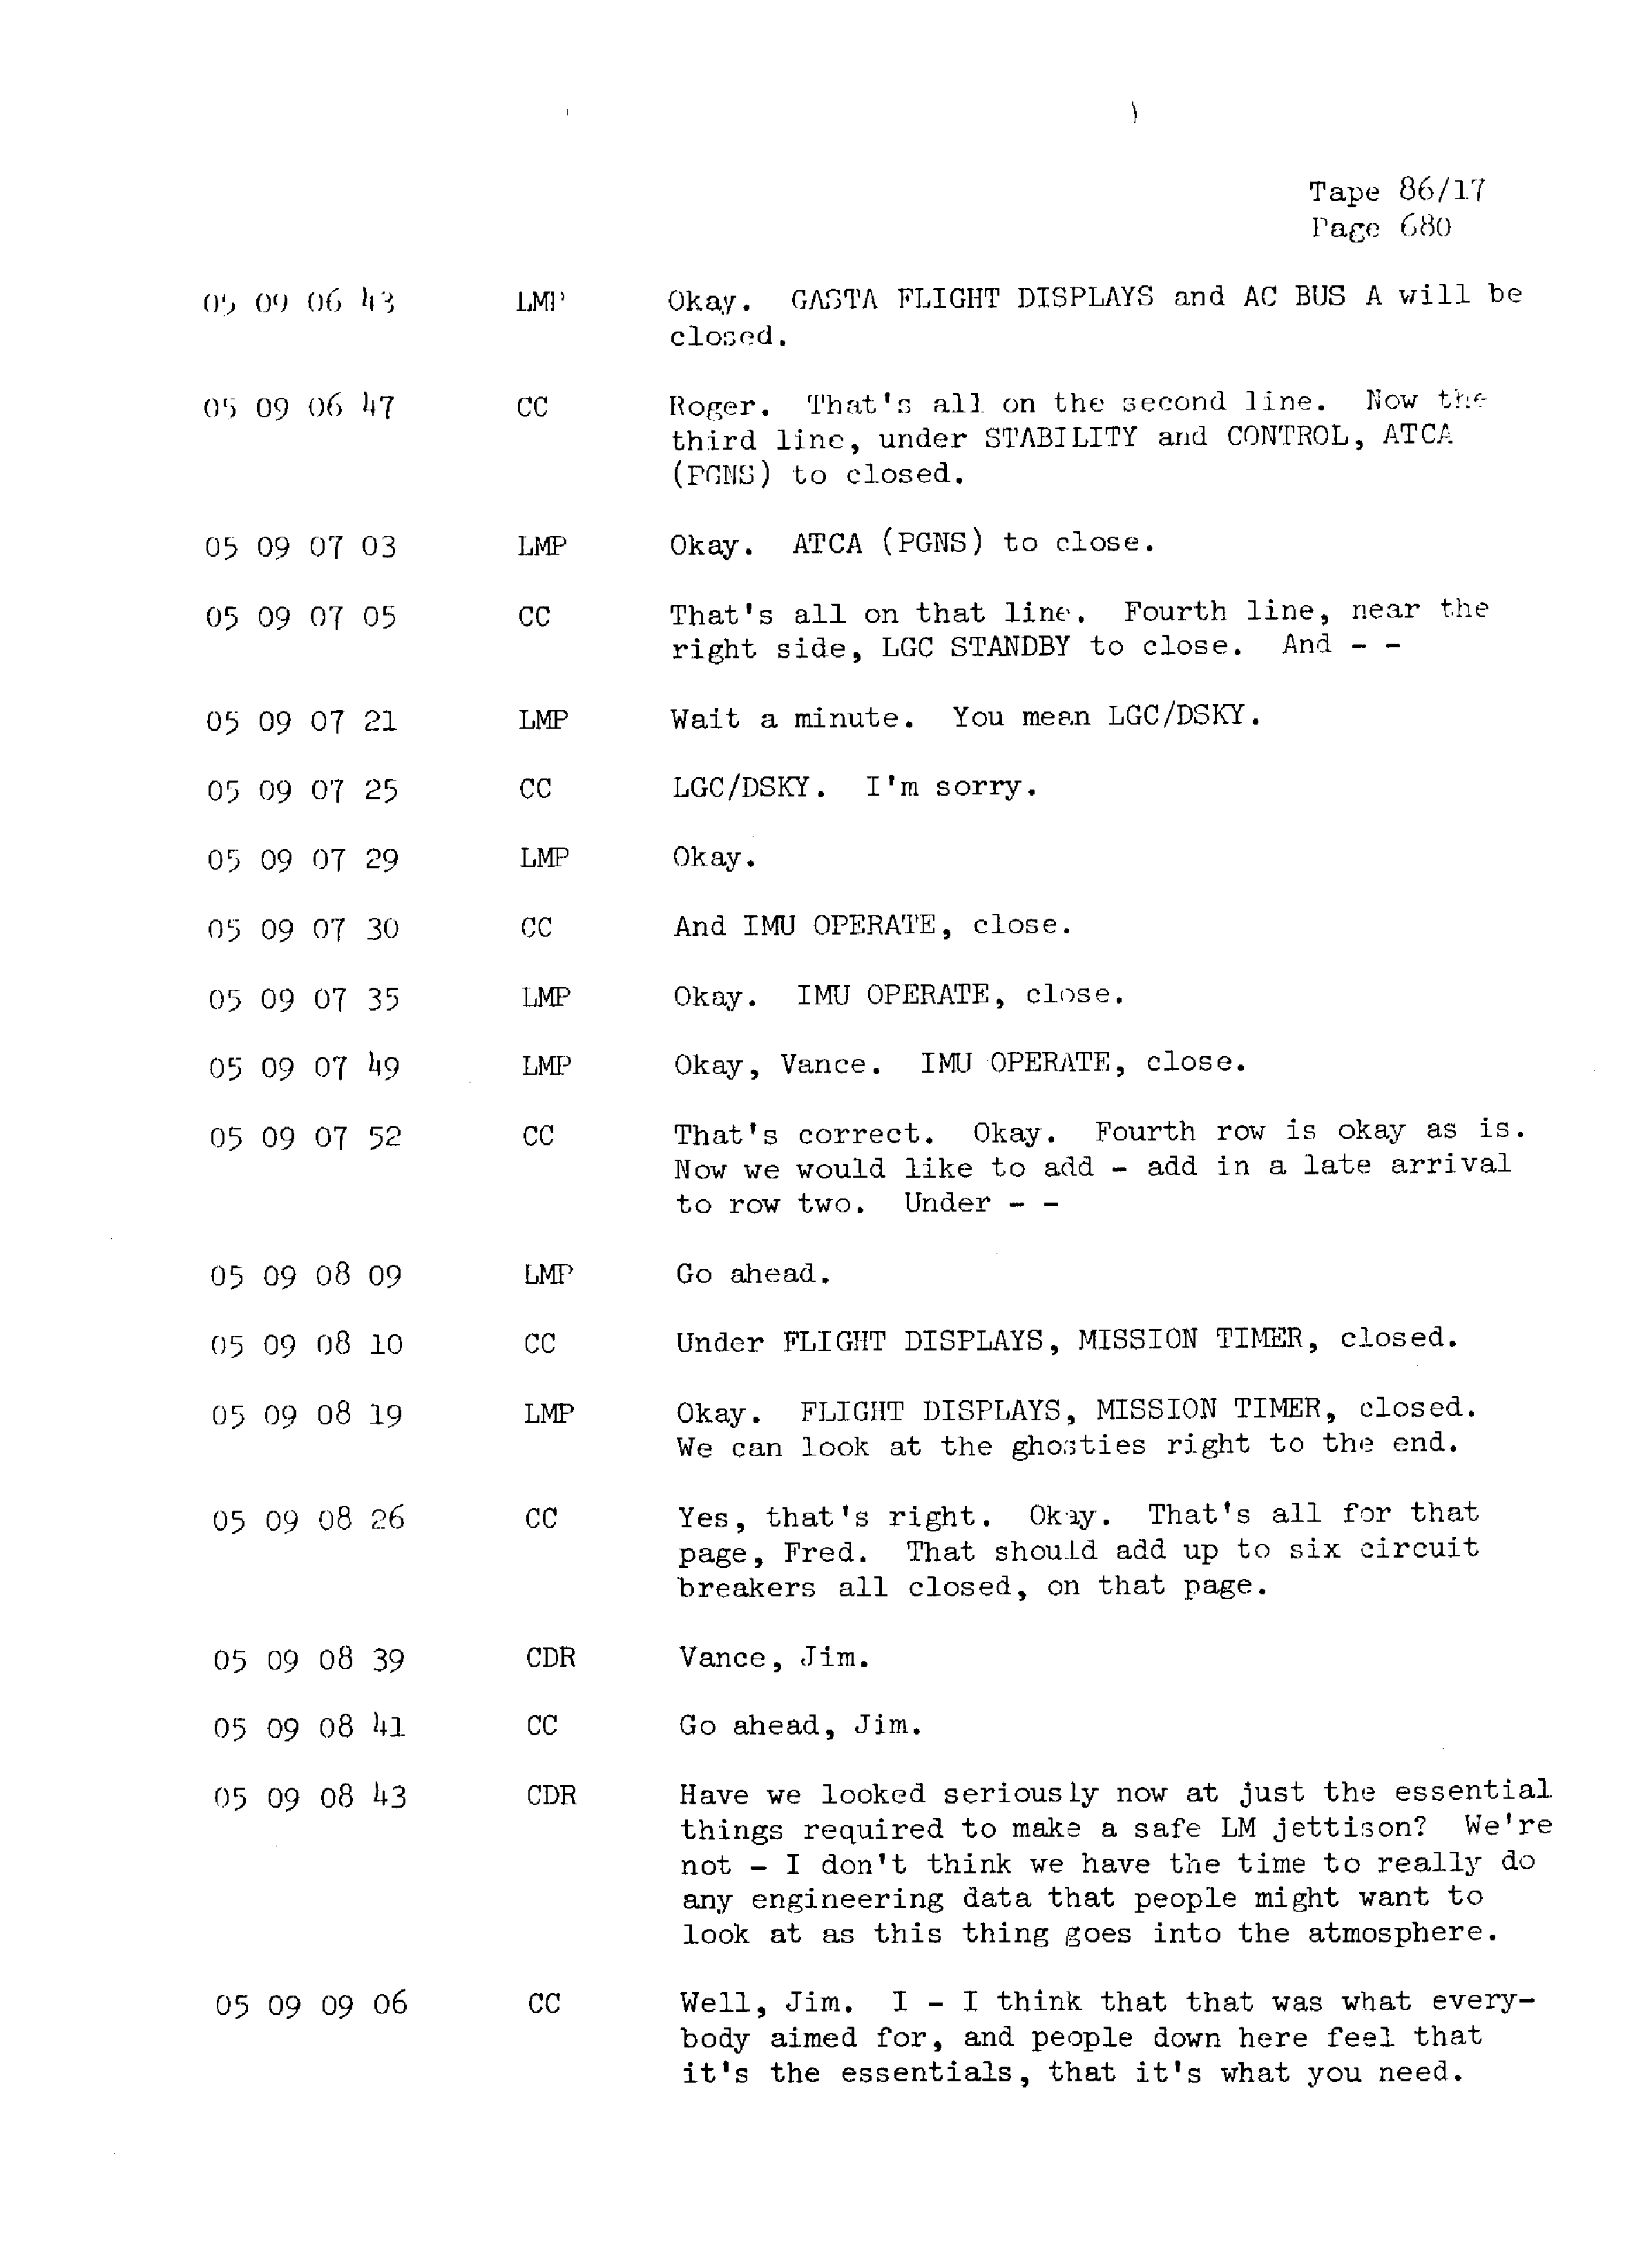 Page 687 of Apollo 13’s original transcript